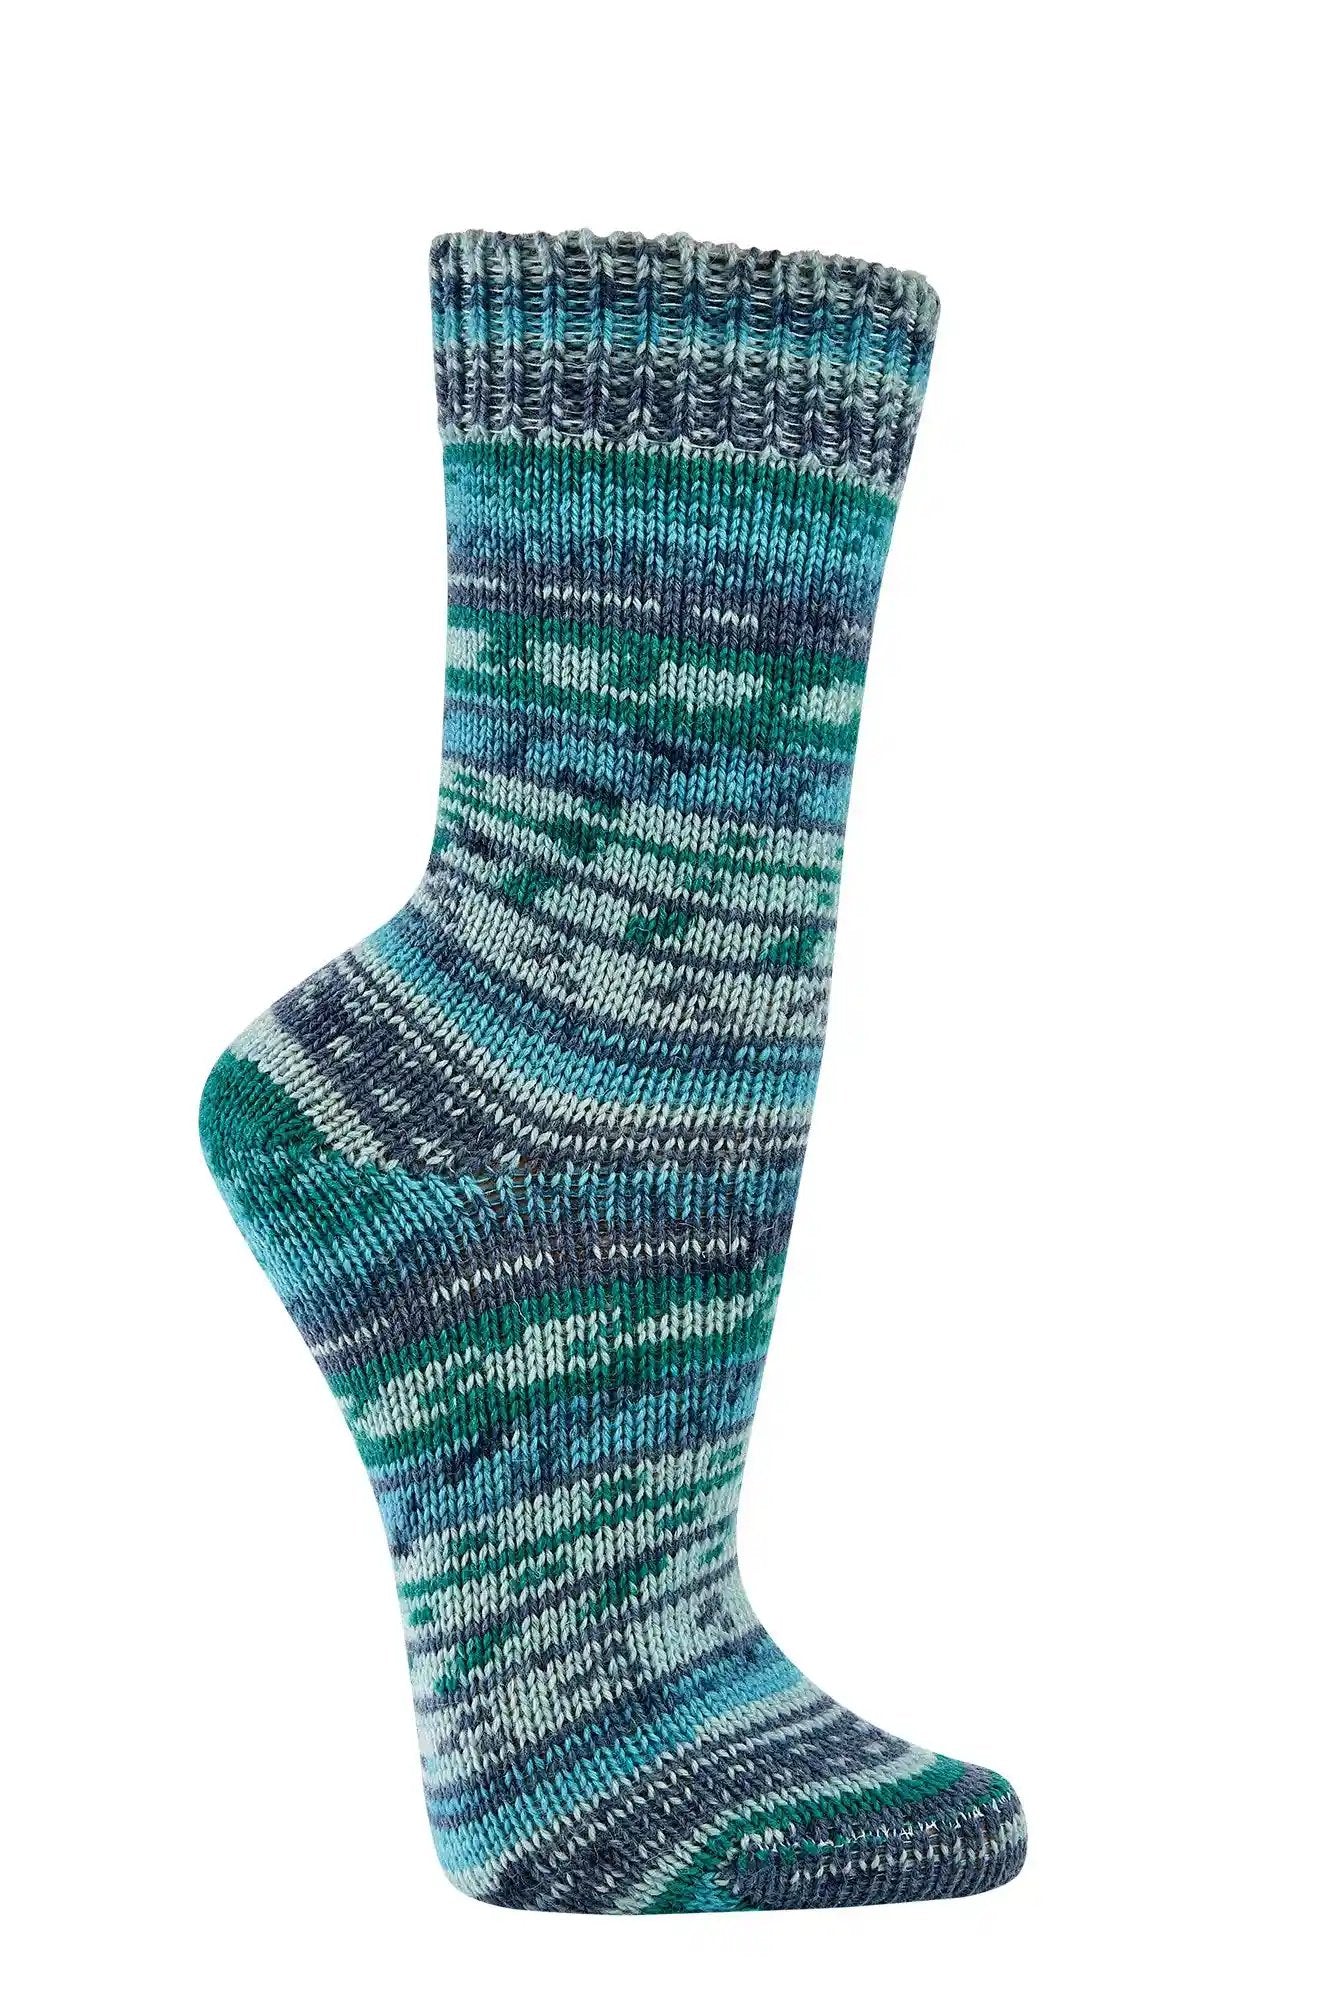 2 o 4 pares de calcetines calentitos con 70% de lana en muchos colores bonitos, como los de la abuela.